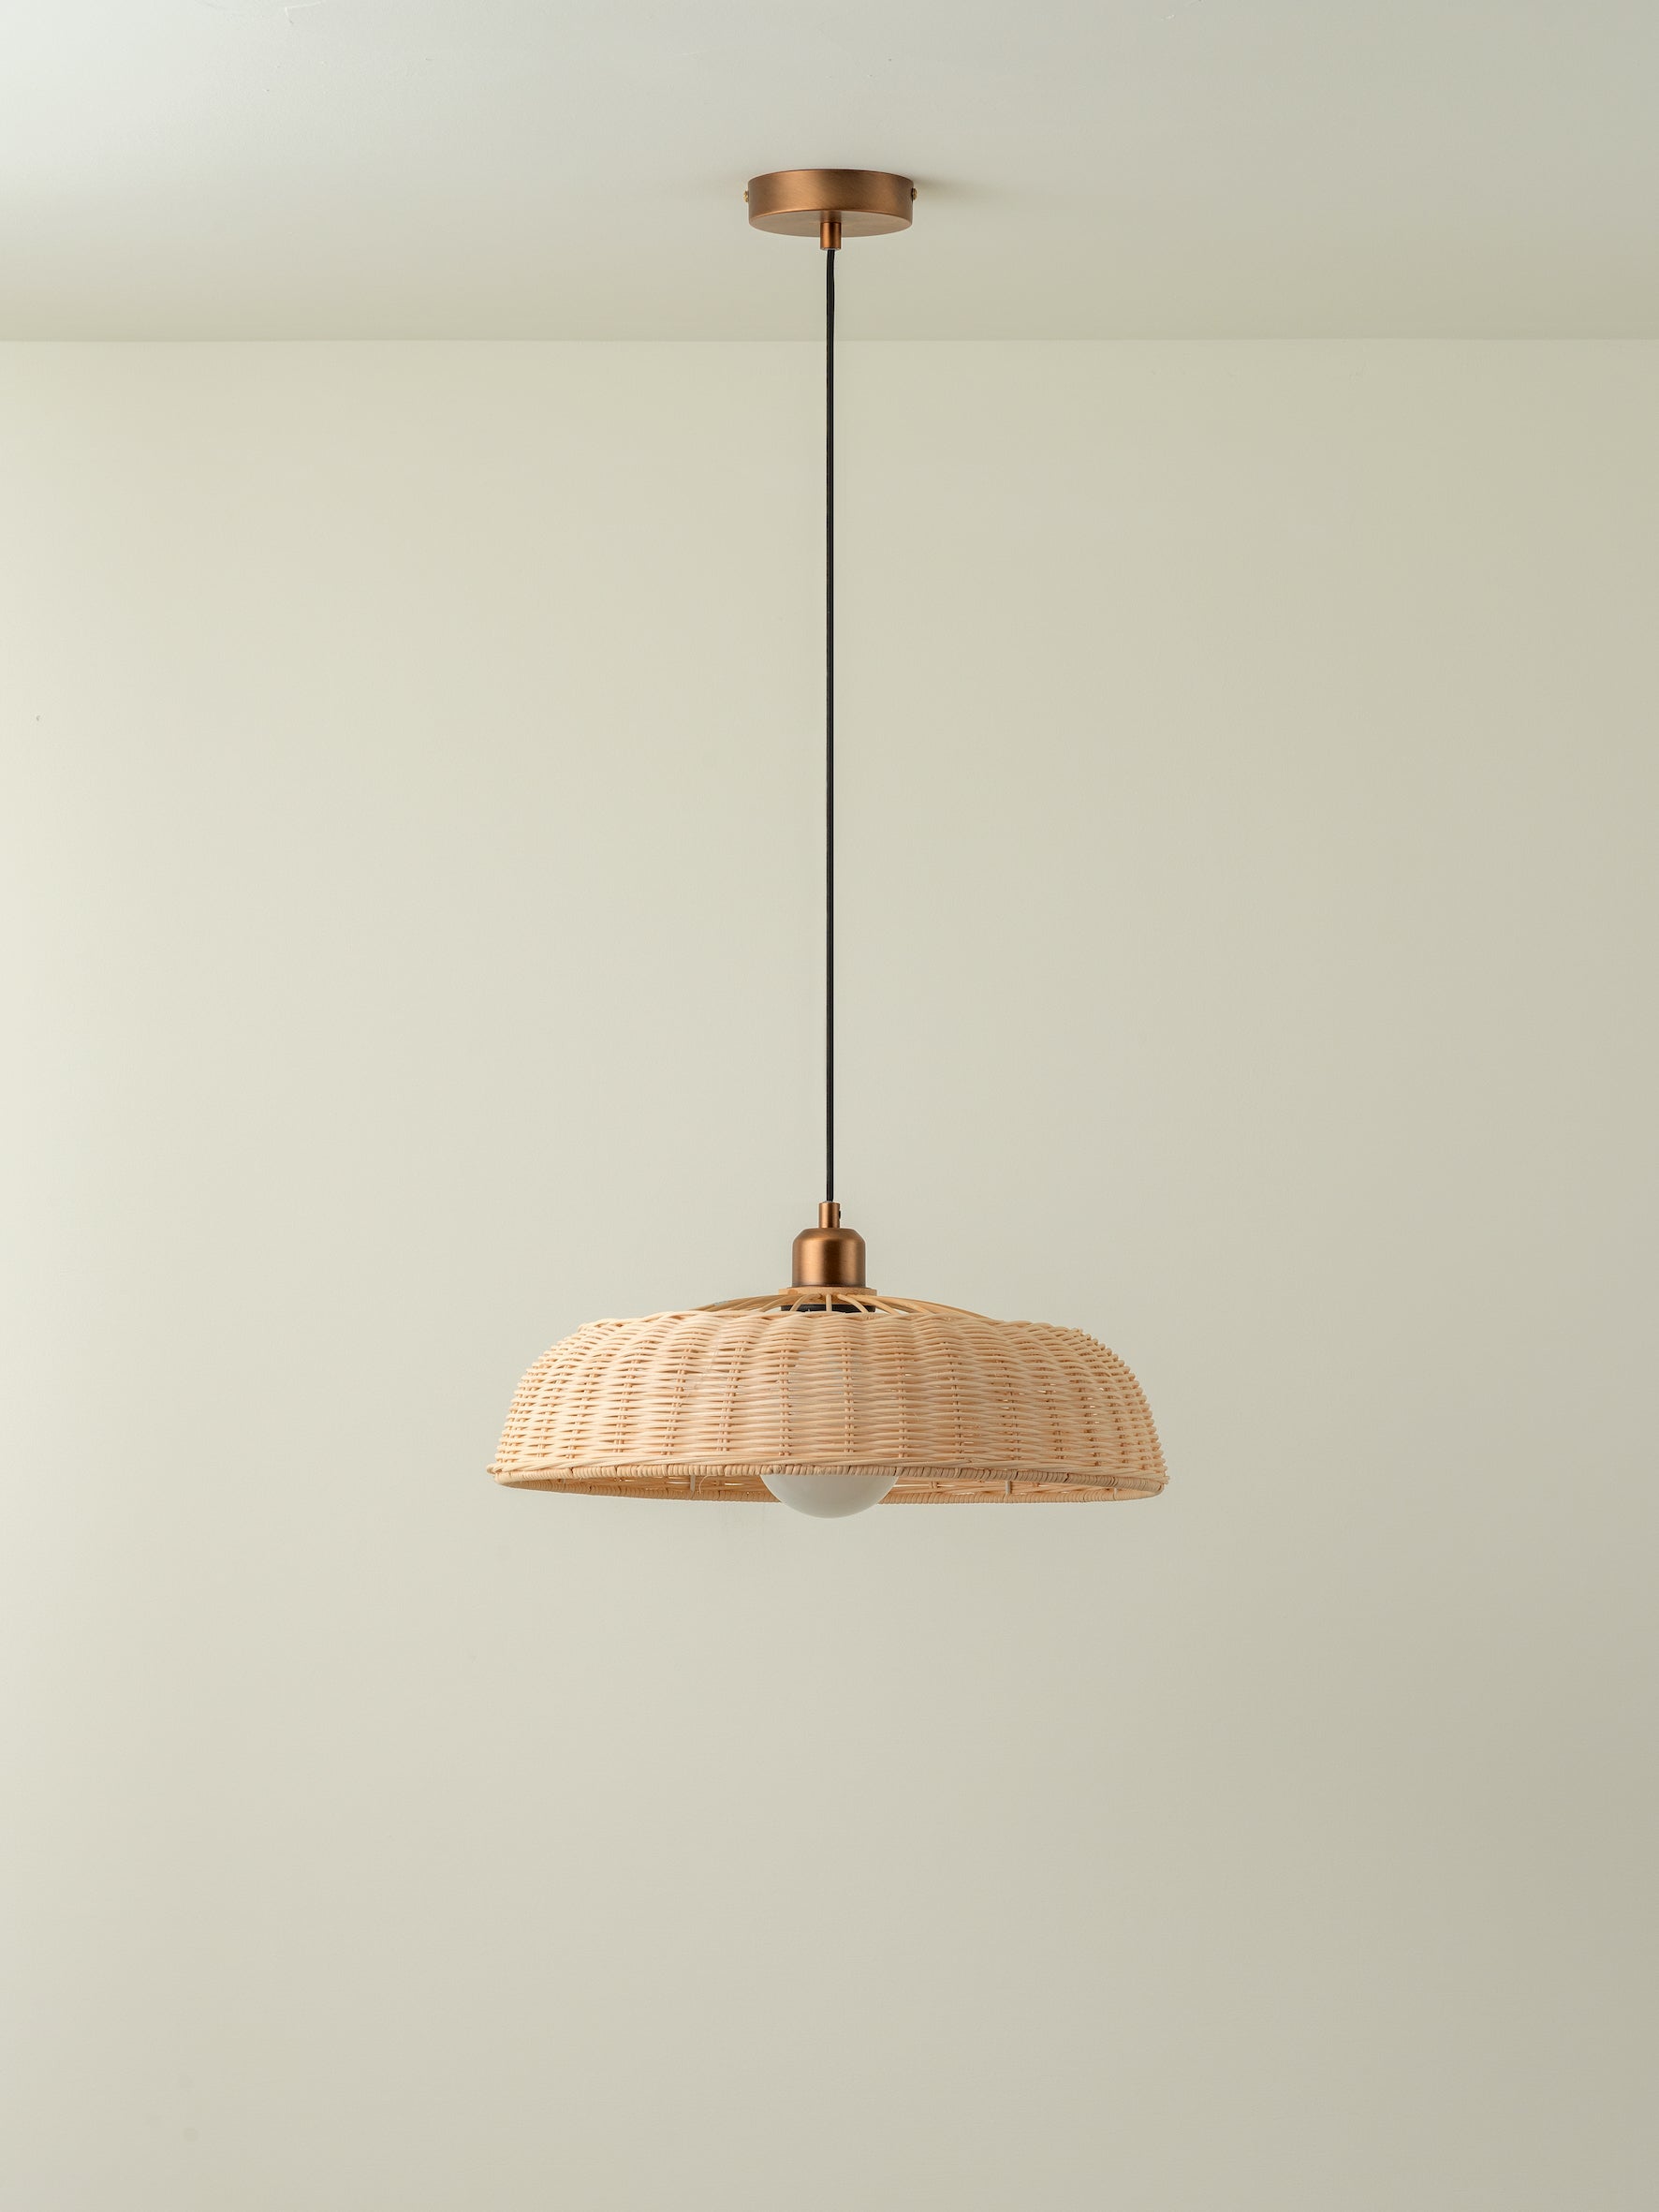 Capel - 1 light burnished brass drop cap lampholder kit | Ceiling Light | Lights & Lamps | UK | Modern Affordable Designer Lighting